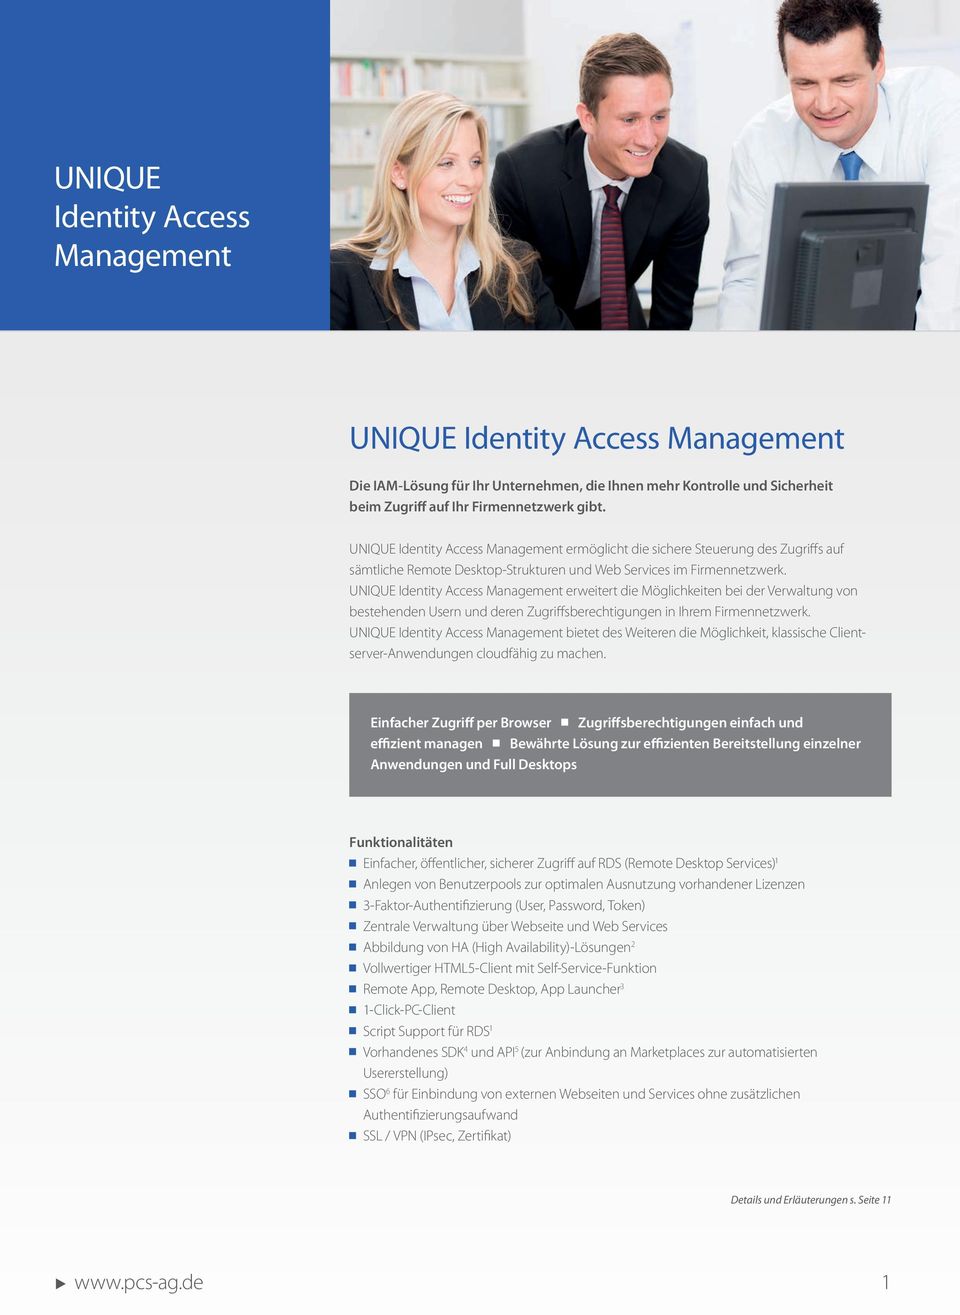 UNIQUE Manaement erweitert die Mölichkeiten bei der Verwaltun von bestehenden Usern und deren Zuriffsberechtiunen in Ihrem Firmennetzwerk.